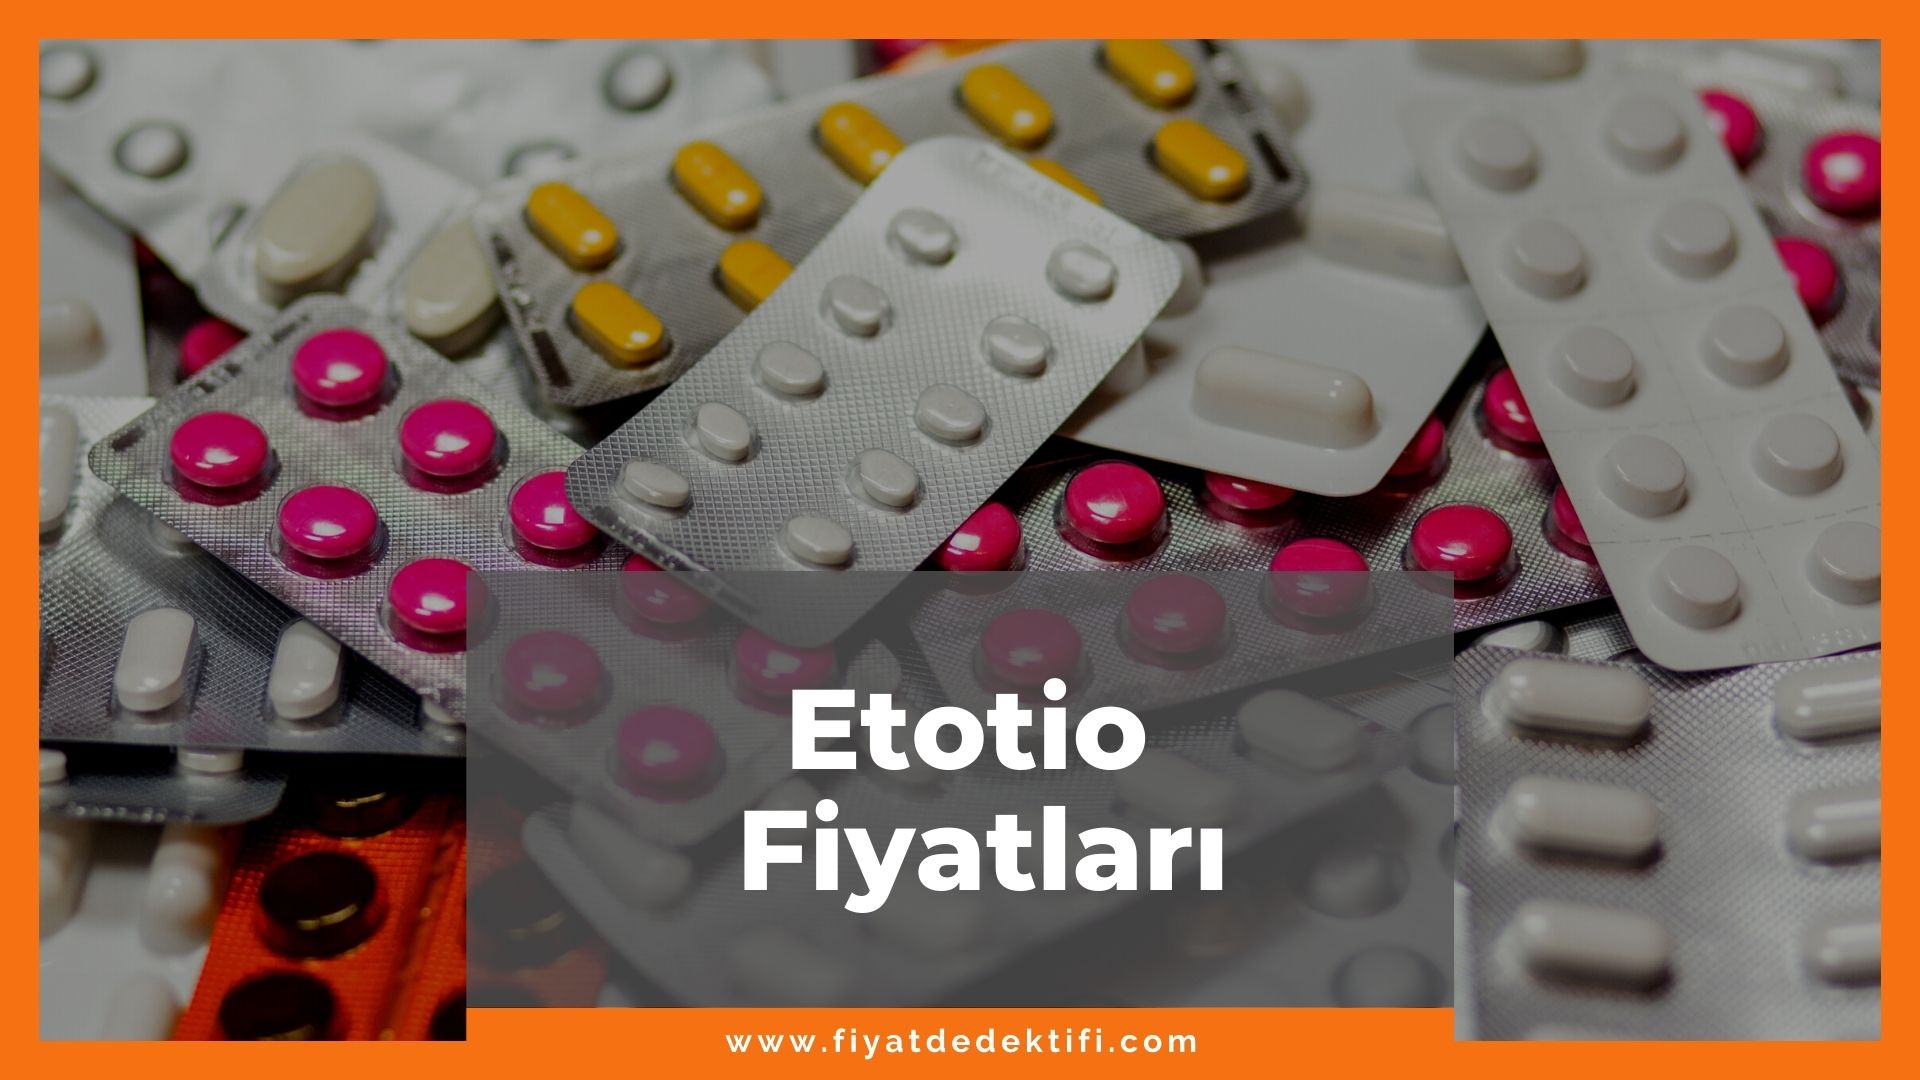 Etotio Fiyat 2021, Etotio 400 mg/8 mg 14 Tablet Fiyatı, etotio zamlandı mı, etotio zamlı fiyatı ne kadar kaç tl oldu